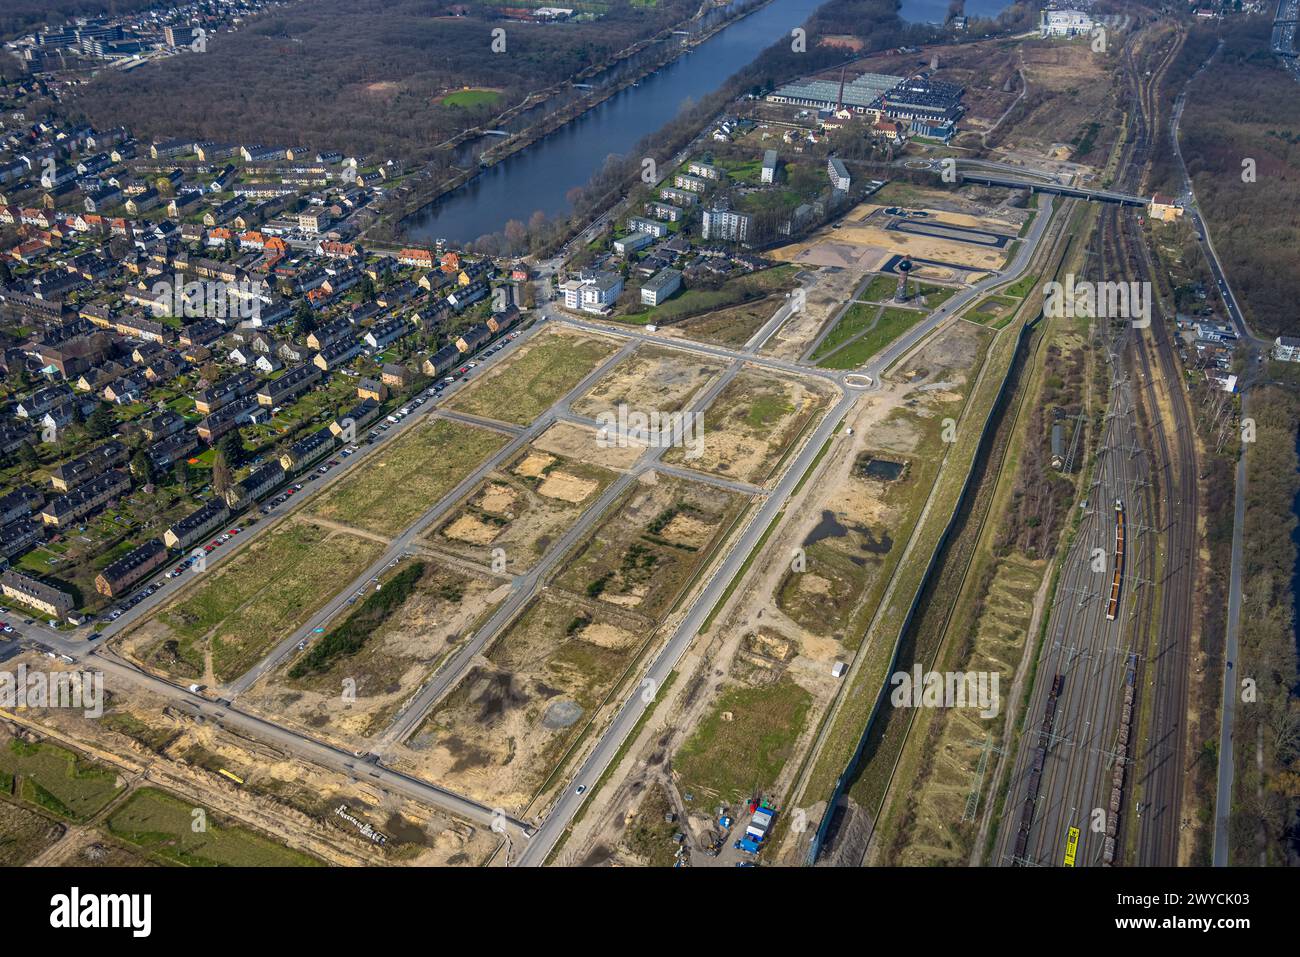 Luftaufnahme, Baustelle für geplante Duisburger Wohnquartier am ehemaligen Rangierbahnhof Wedau, an der Sechs-Seen-Platte, Wedau, Duisbur Stockfoto